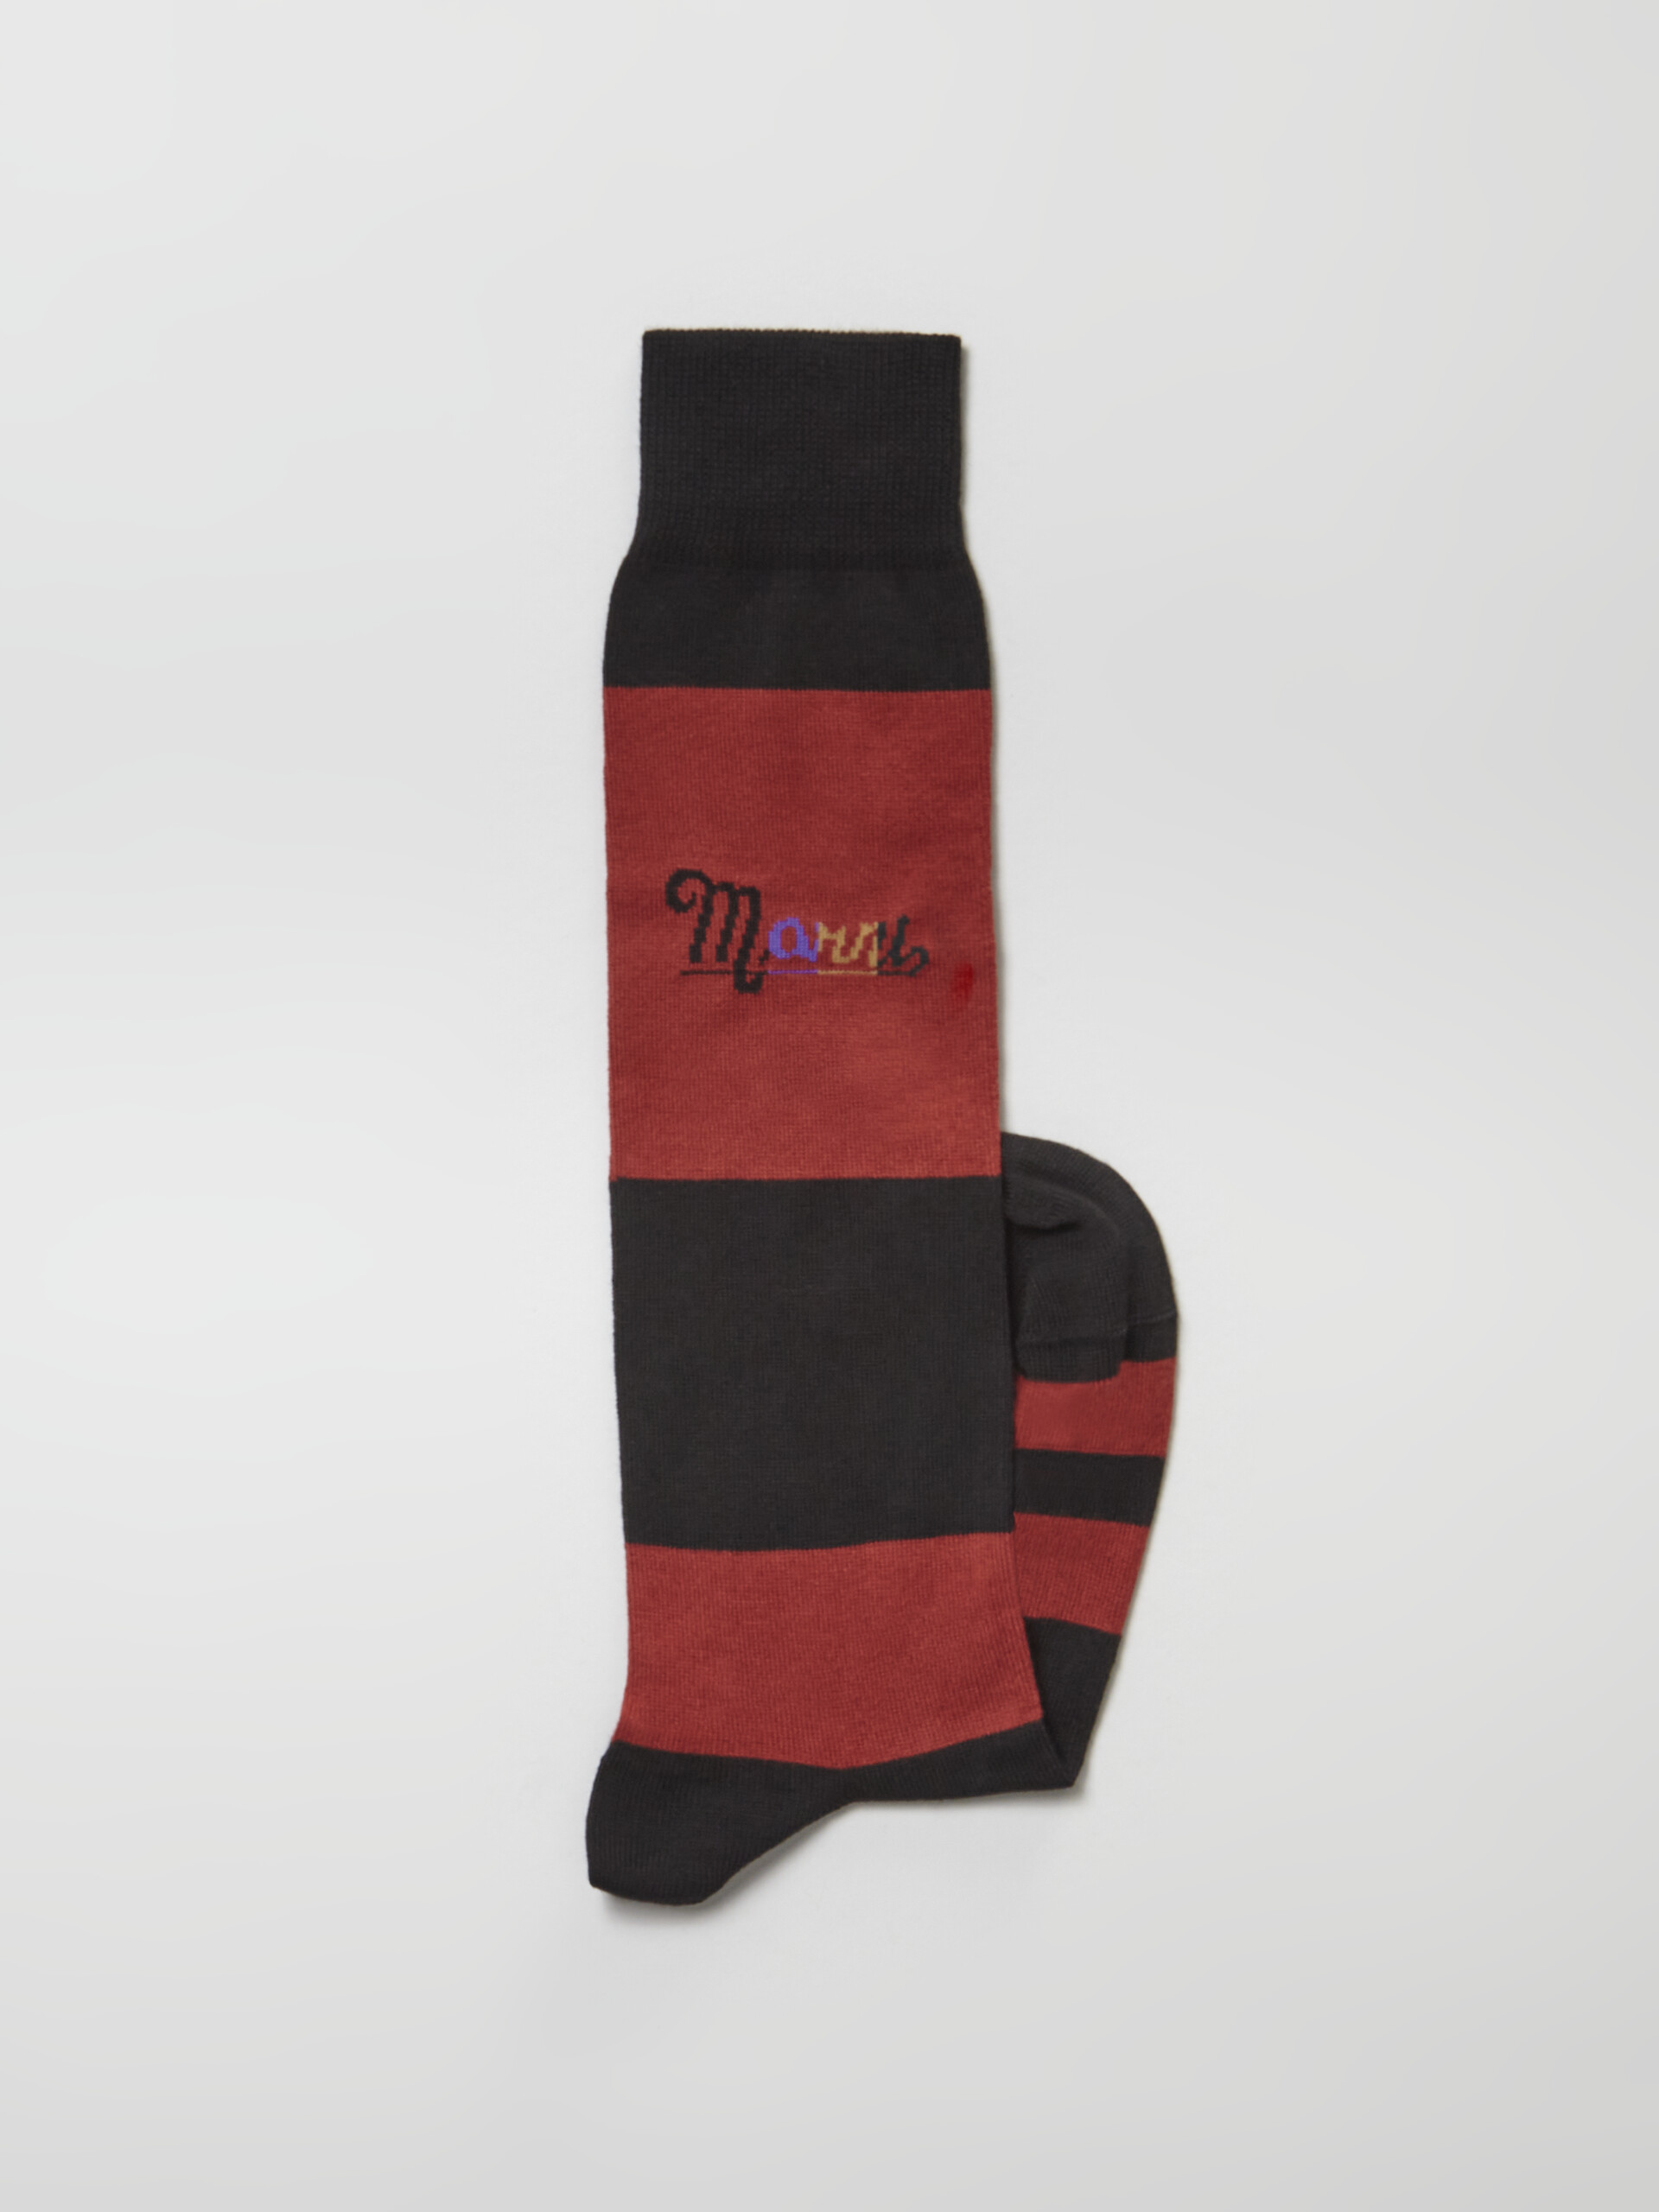 Socke aus schwarz-rot gestreiftem Nylon mit Regenbogen-Logo-Intarsie - Socken - Image 2